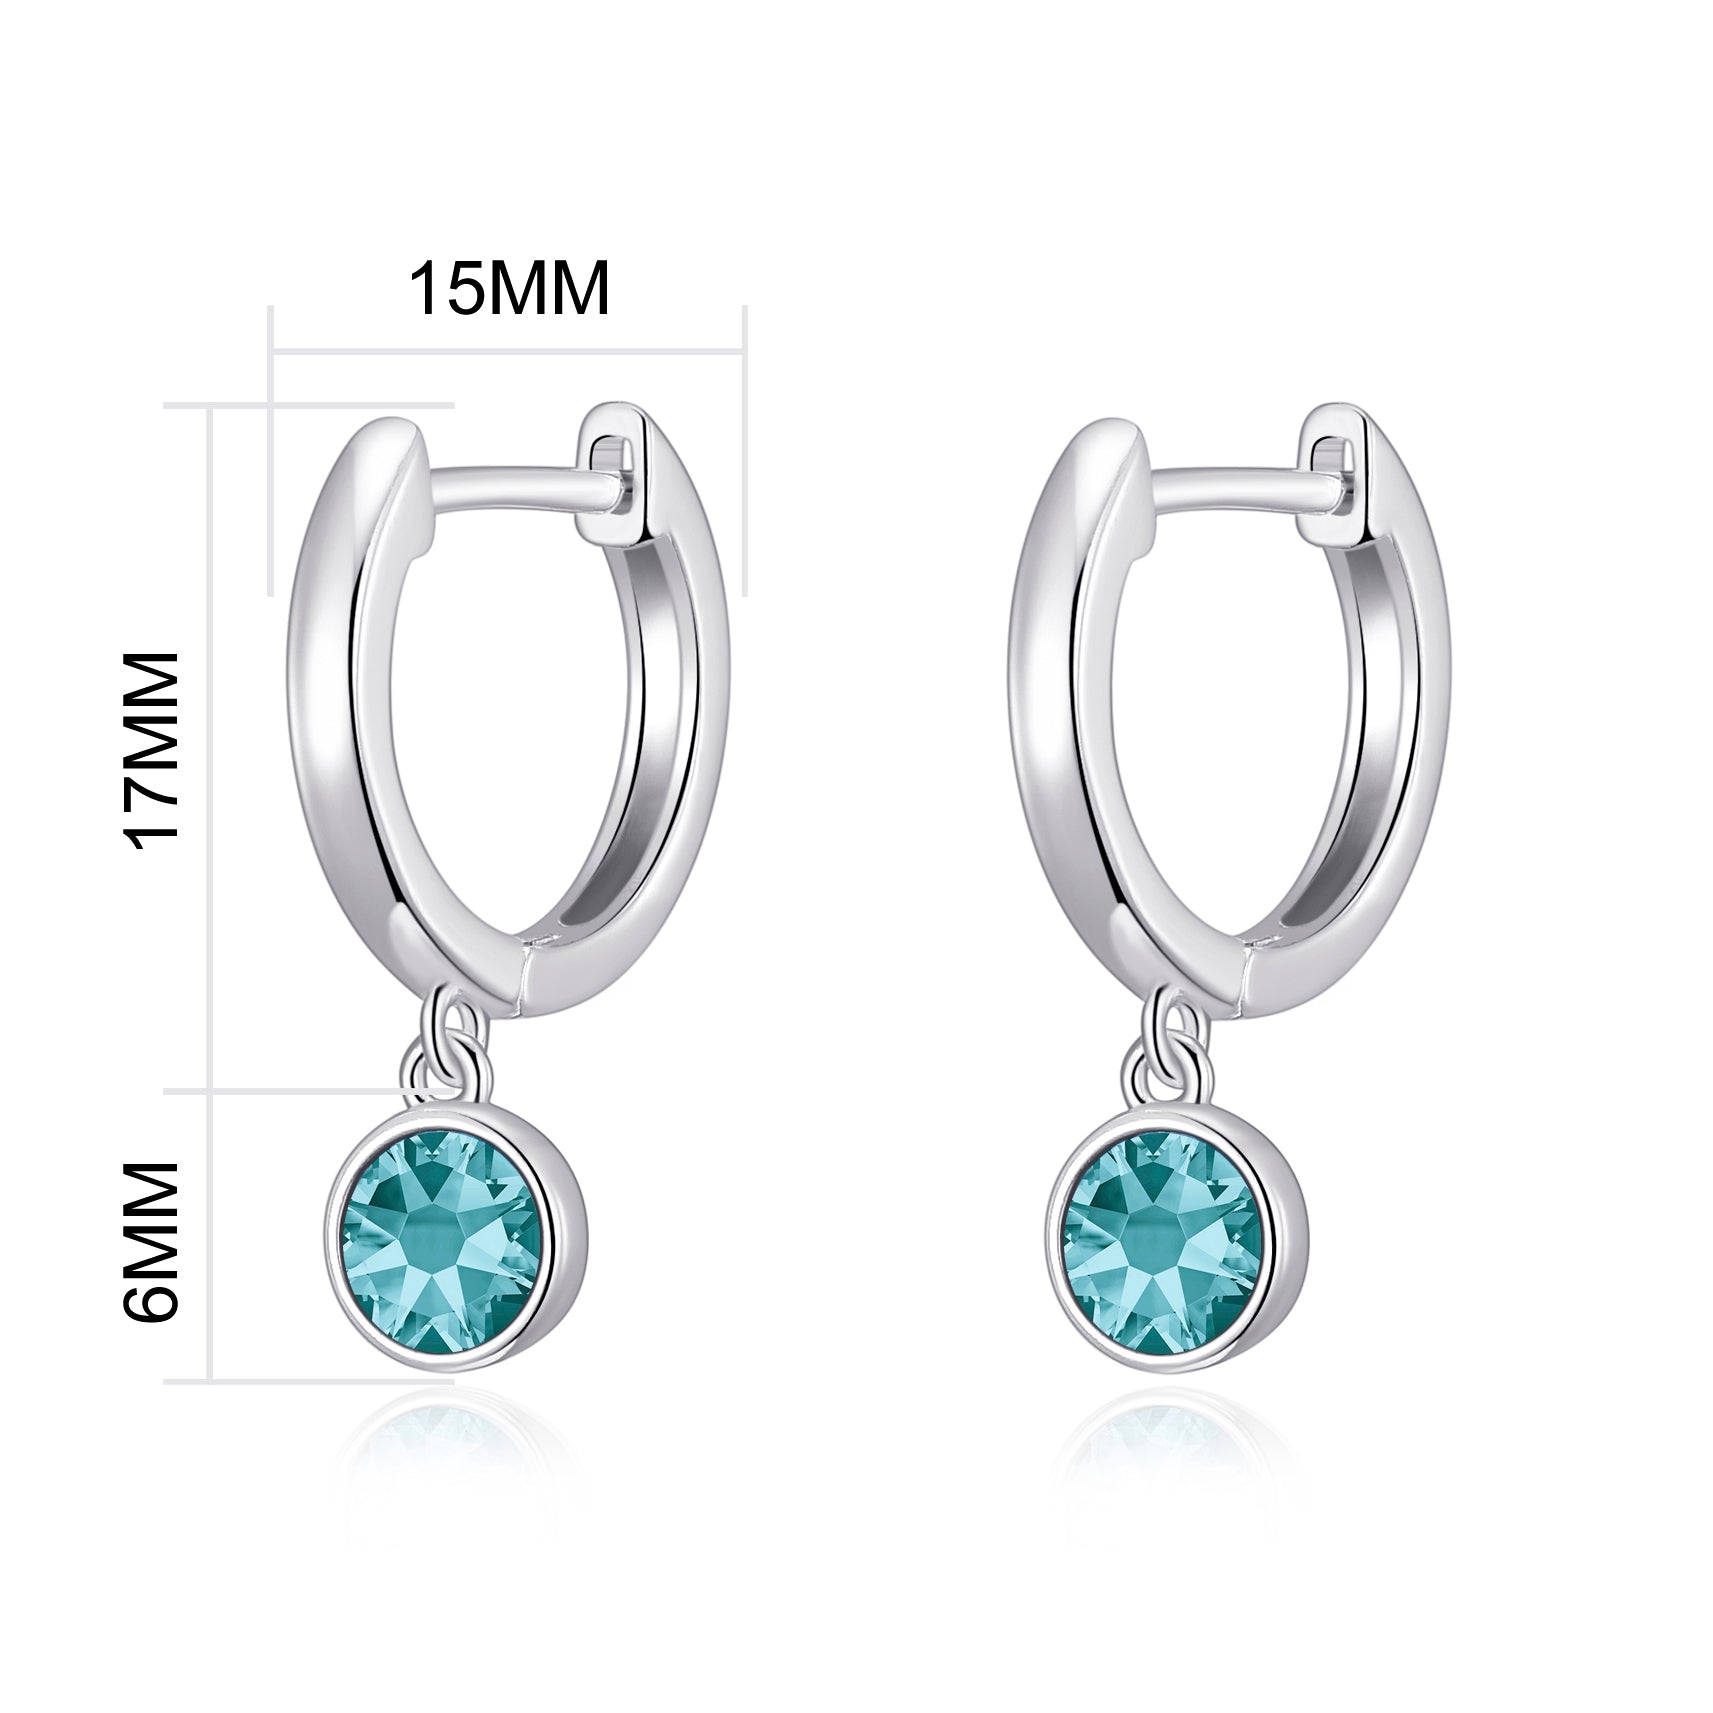 December Birthstone Hoop Earrings Created with Blue Topaz Zircondia® Crystals